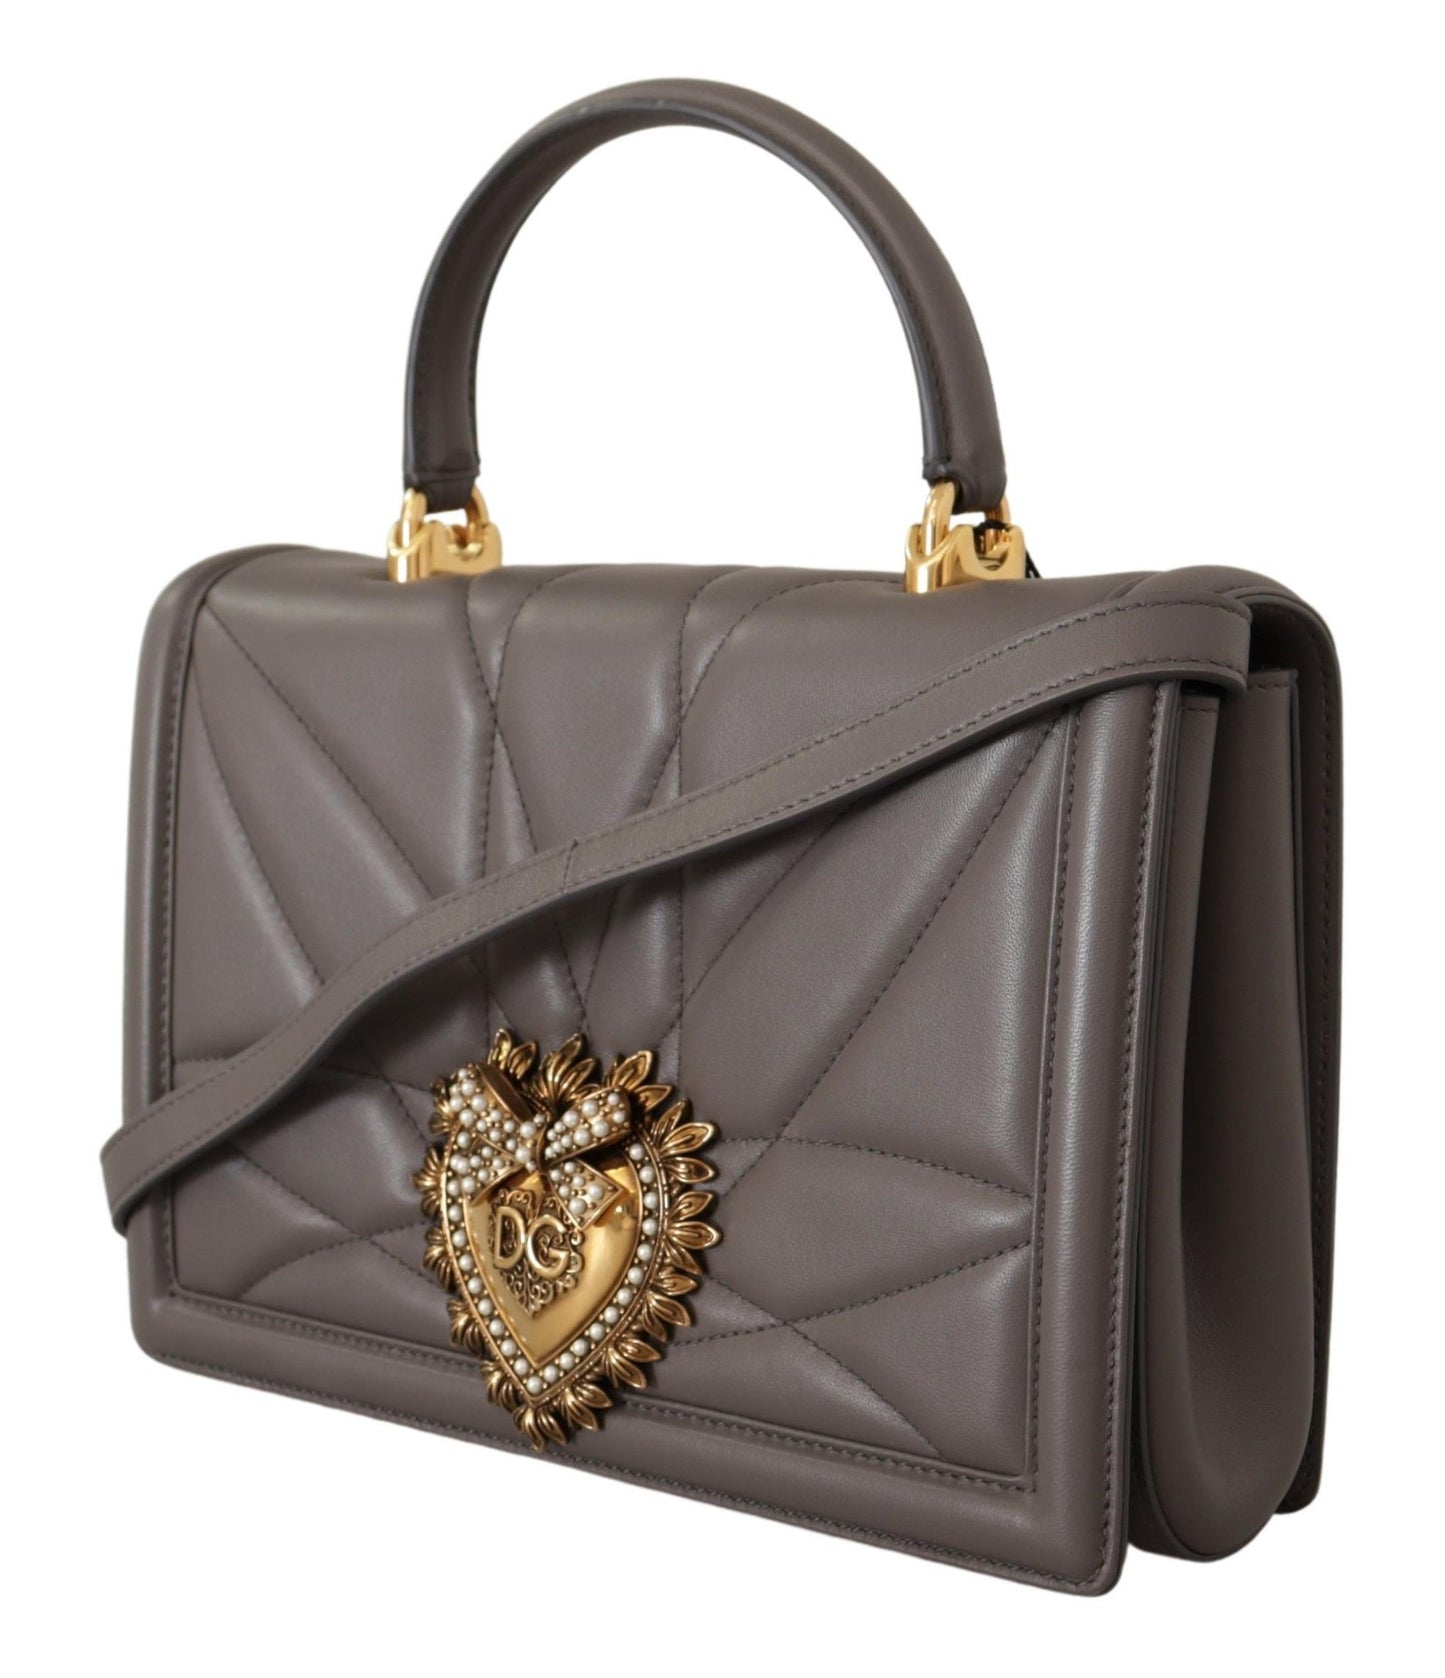 Gray Devotion Leather Shoulder Bag with Gold Details